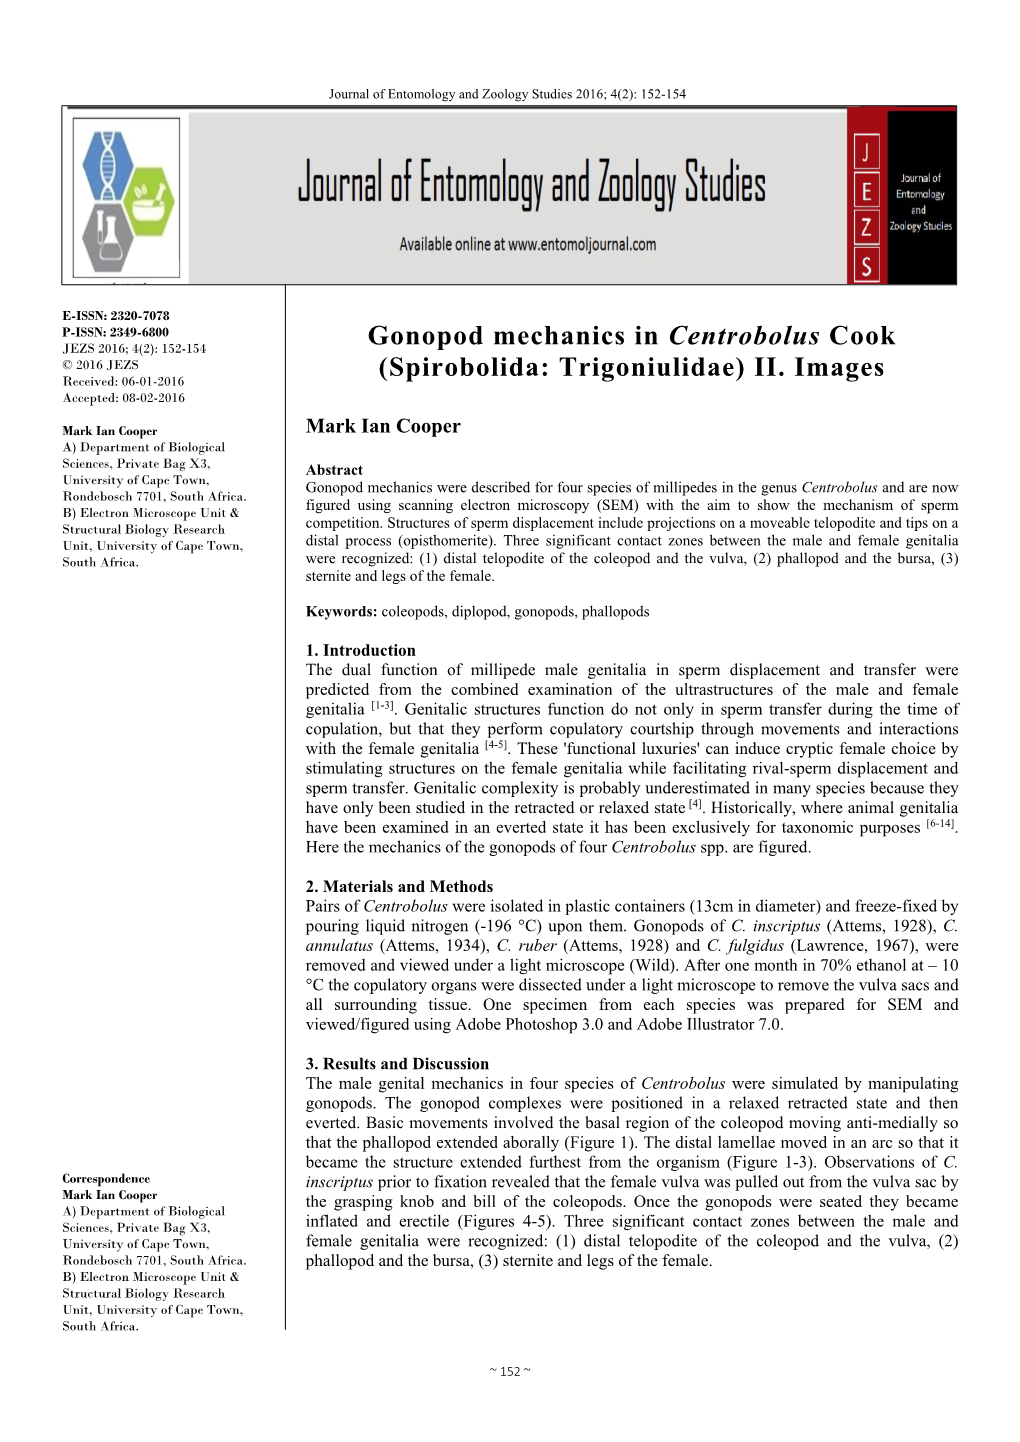 Gonopod Mechanics in Centrobolus Cook (Spirobolida: Trigoniulidae) II